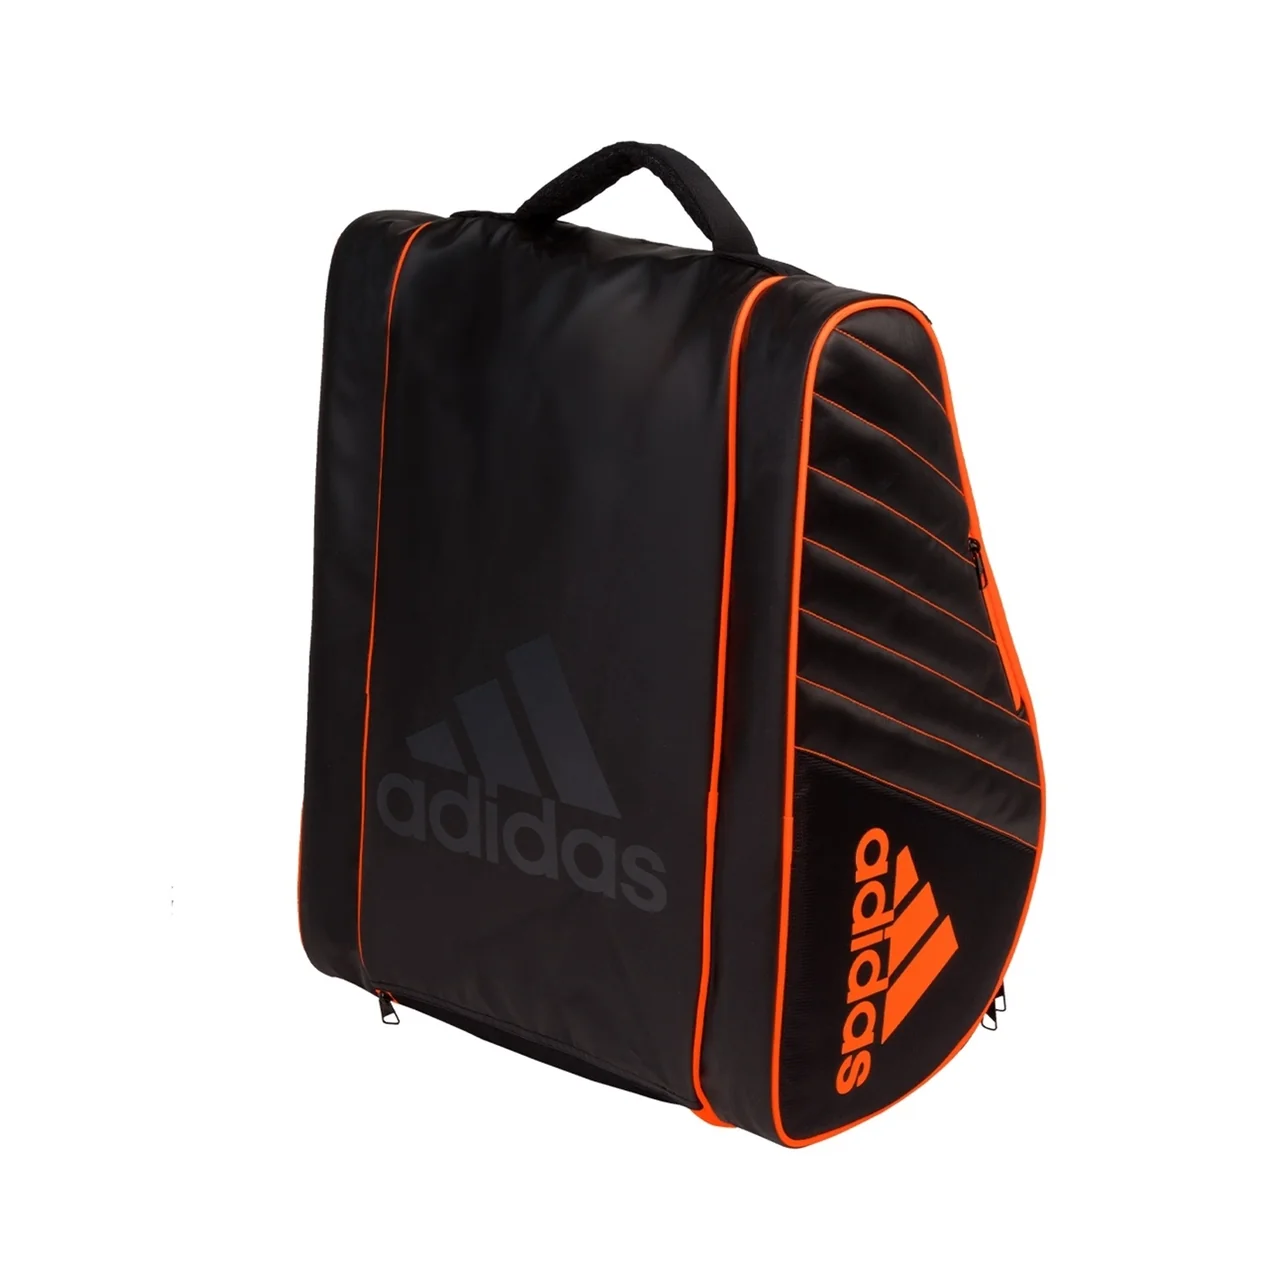 Adidas Pro Tour Padel Bag Black/Orange